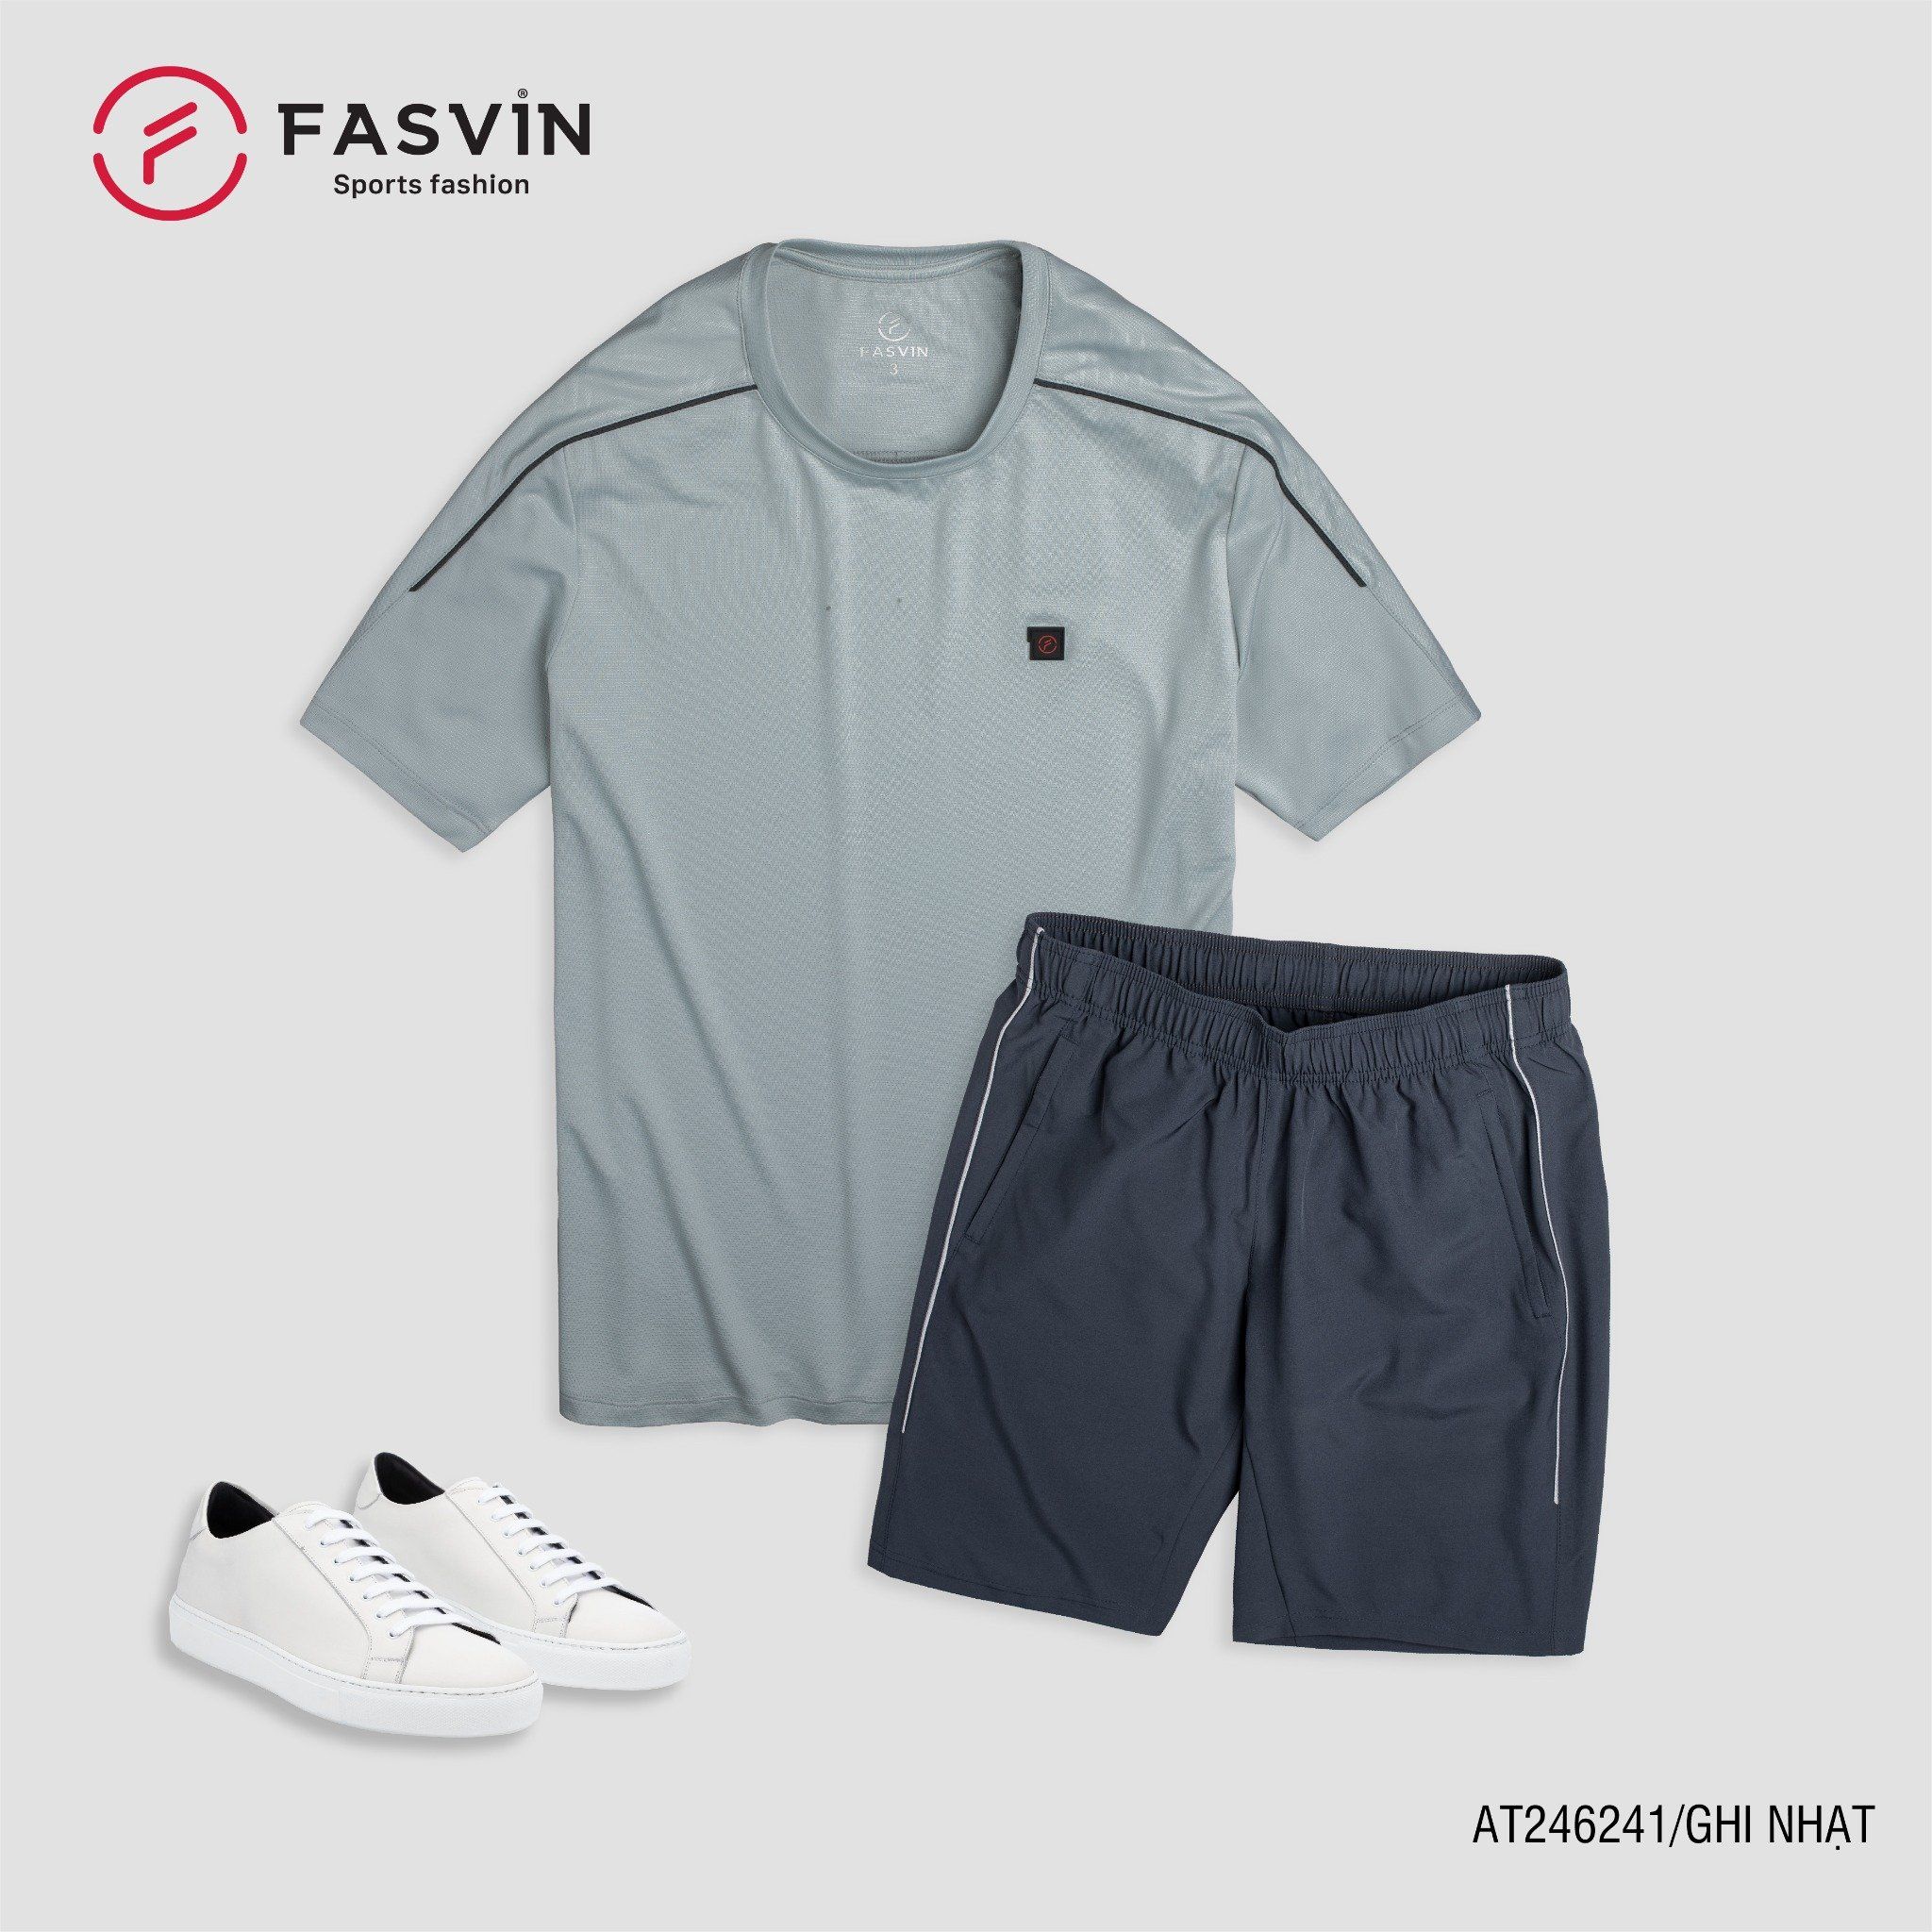  Bộ quần áo thể thao nam FASVIN AT24624 chất vải mềm nhẹ co giãn thoải mái 